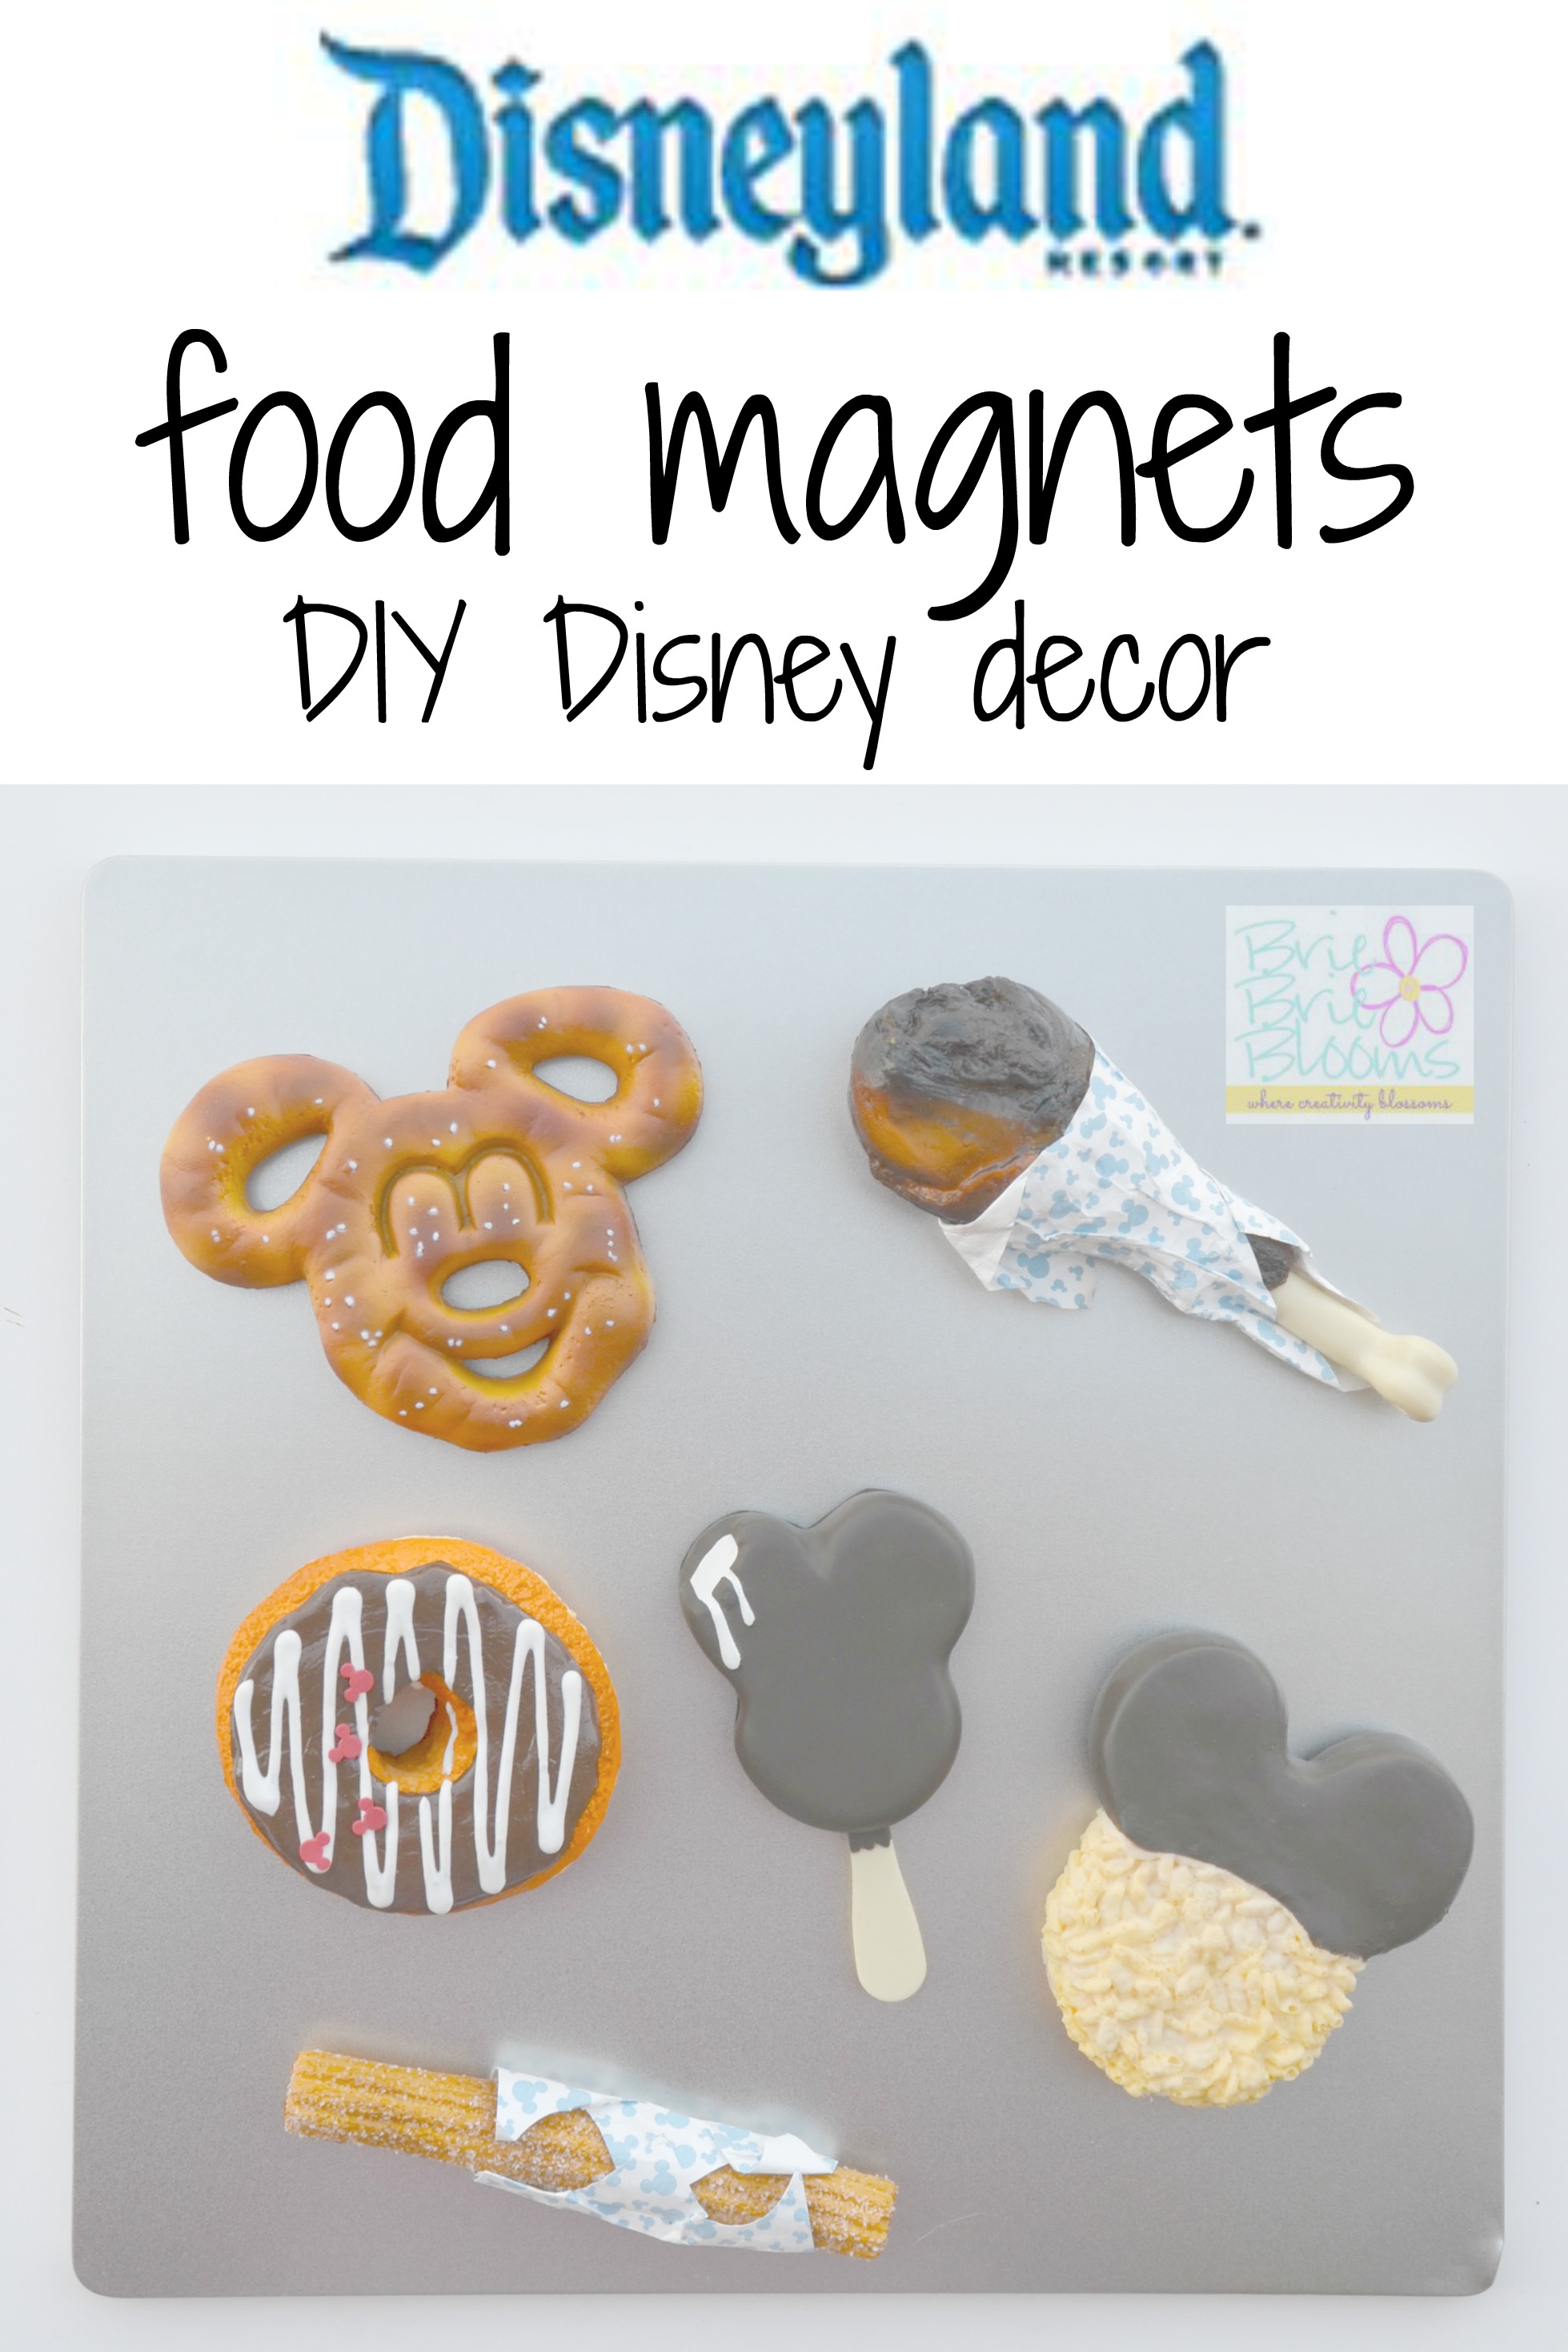 Disneyland food magnets DIY Disney decor